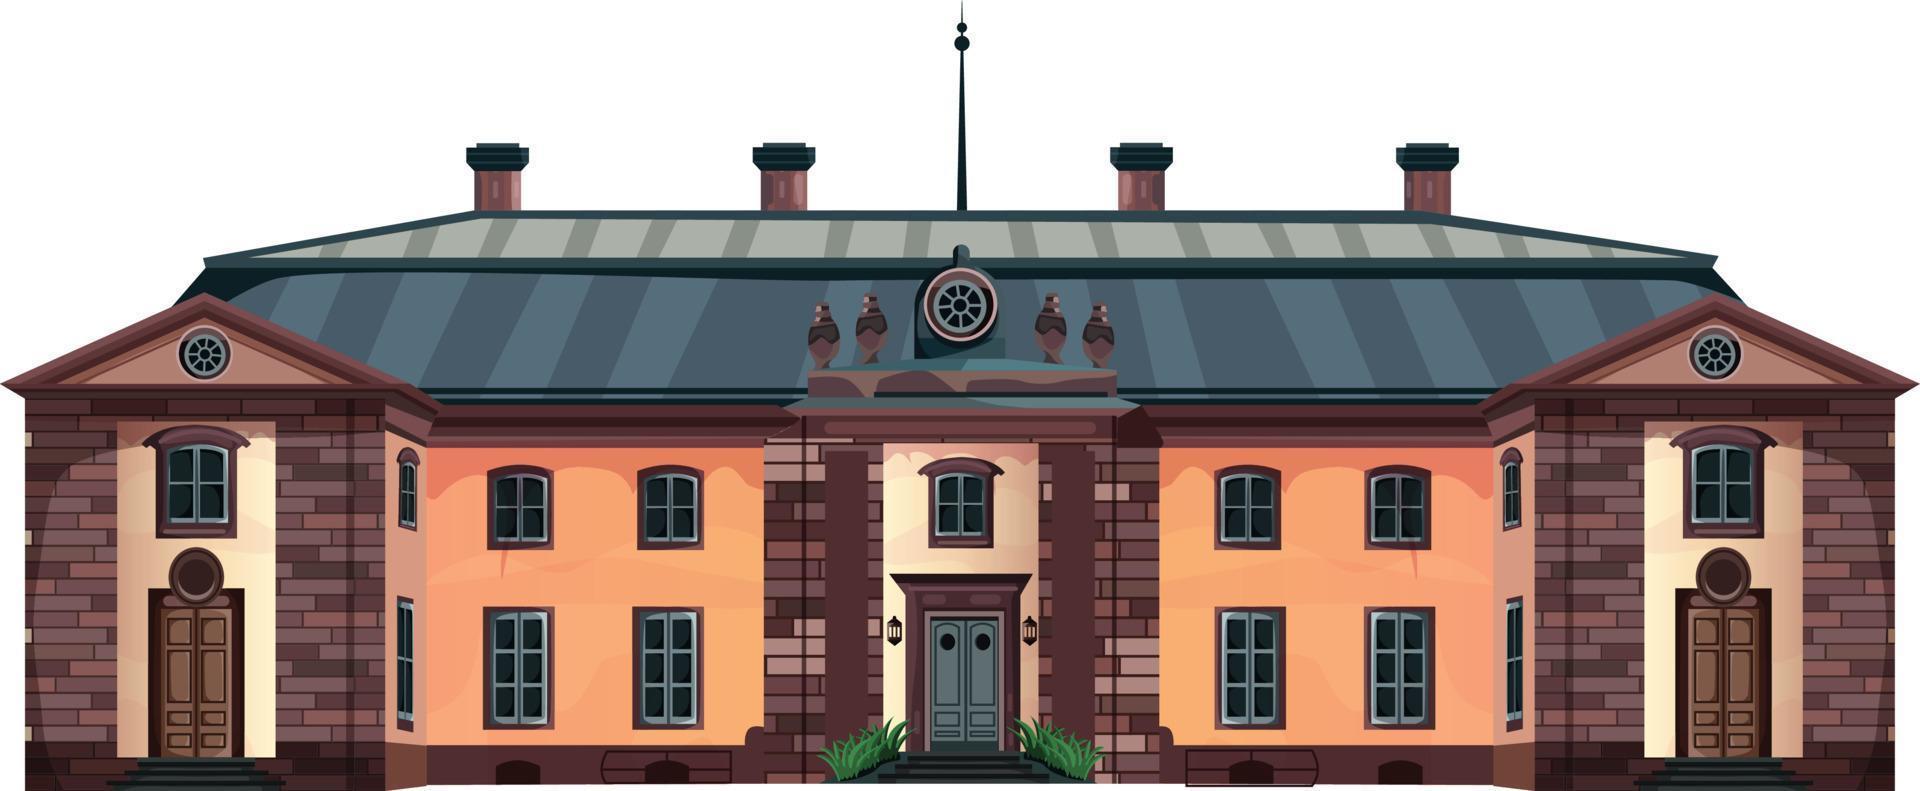 façade de maison avec portes et fenêtres, illustration de vecteur de dessin animé.